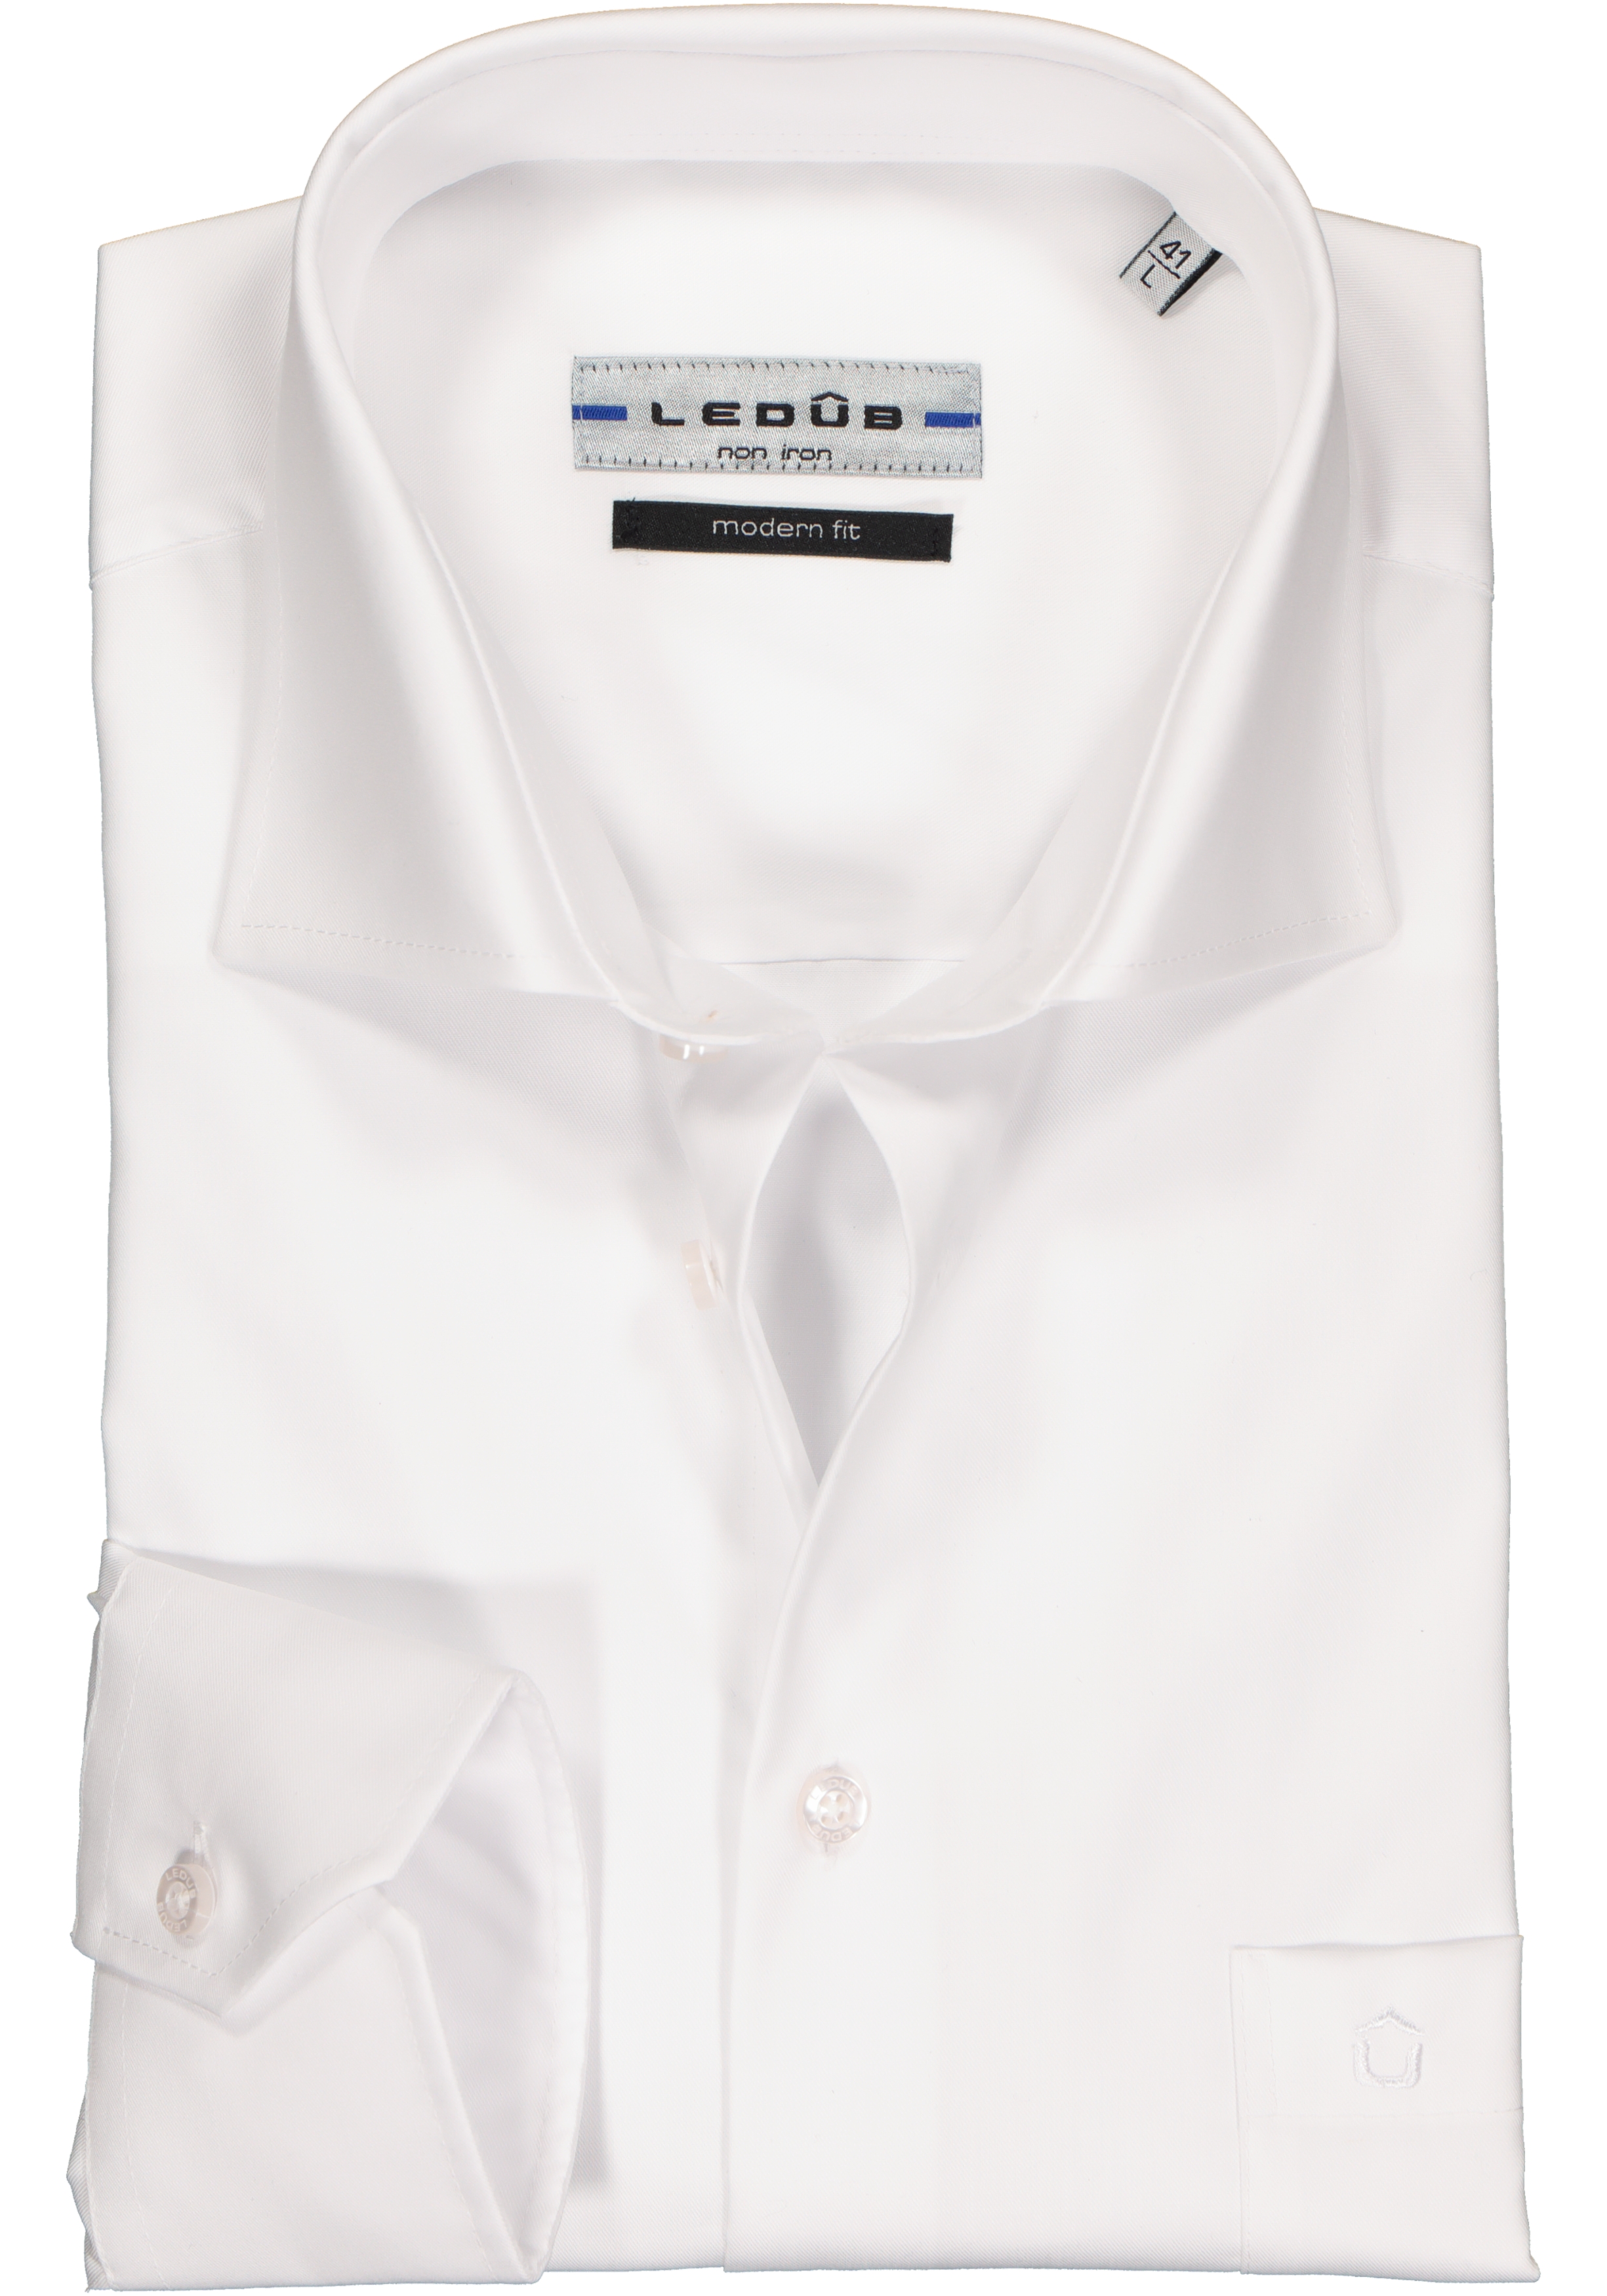 Buitengewoon Zinloos waarom Ledub modern fit overhemd, mouwlengte 7, wit twill - Shop de nieuwste  voorjaarsmode